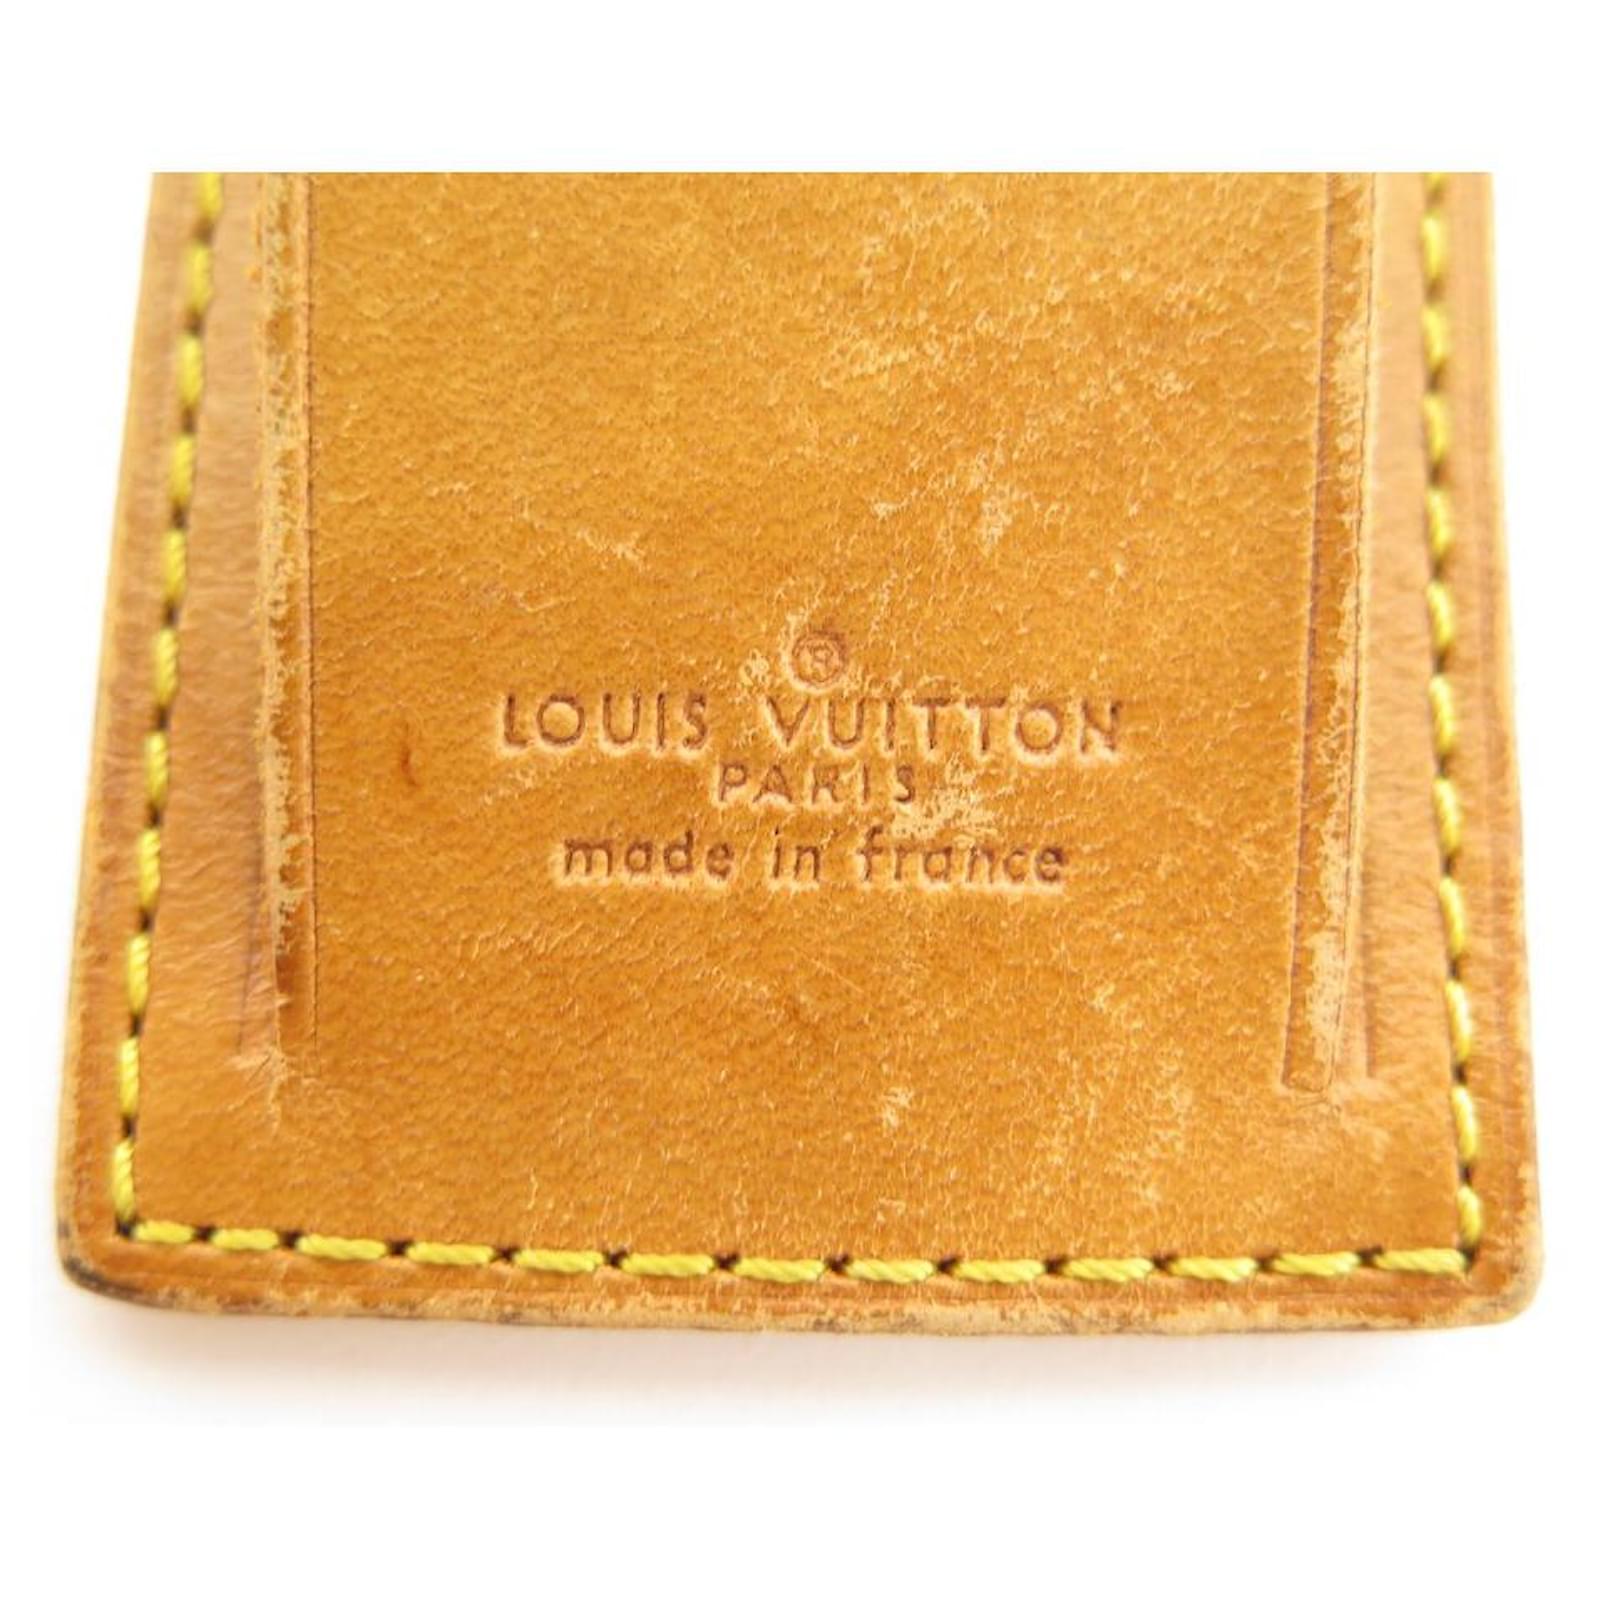 LOUIS VUITTON DOOR ADDRESS CLEAN LINK PADLOCK BAG KEEPALL ADRESS